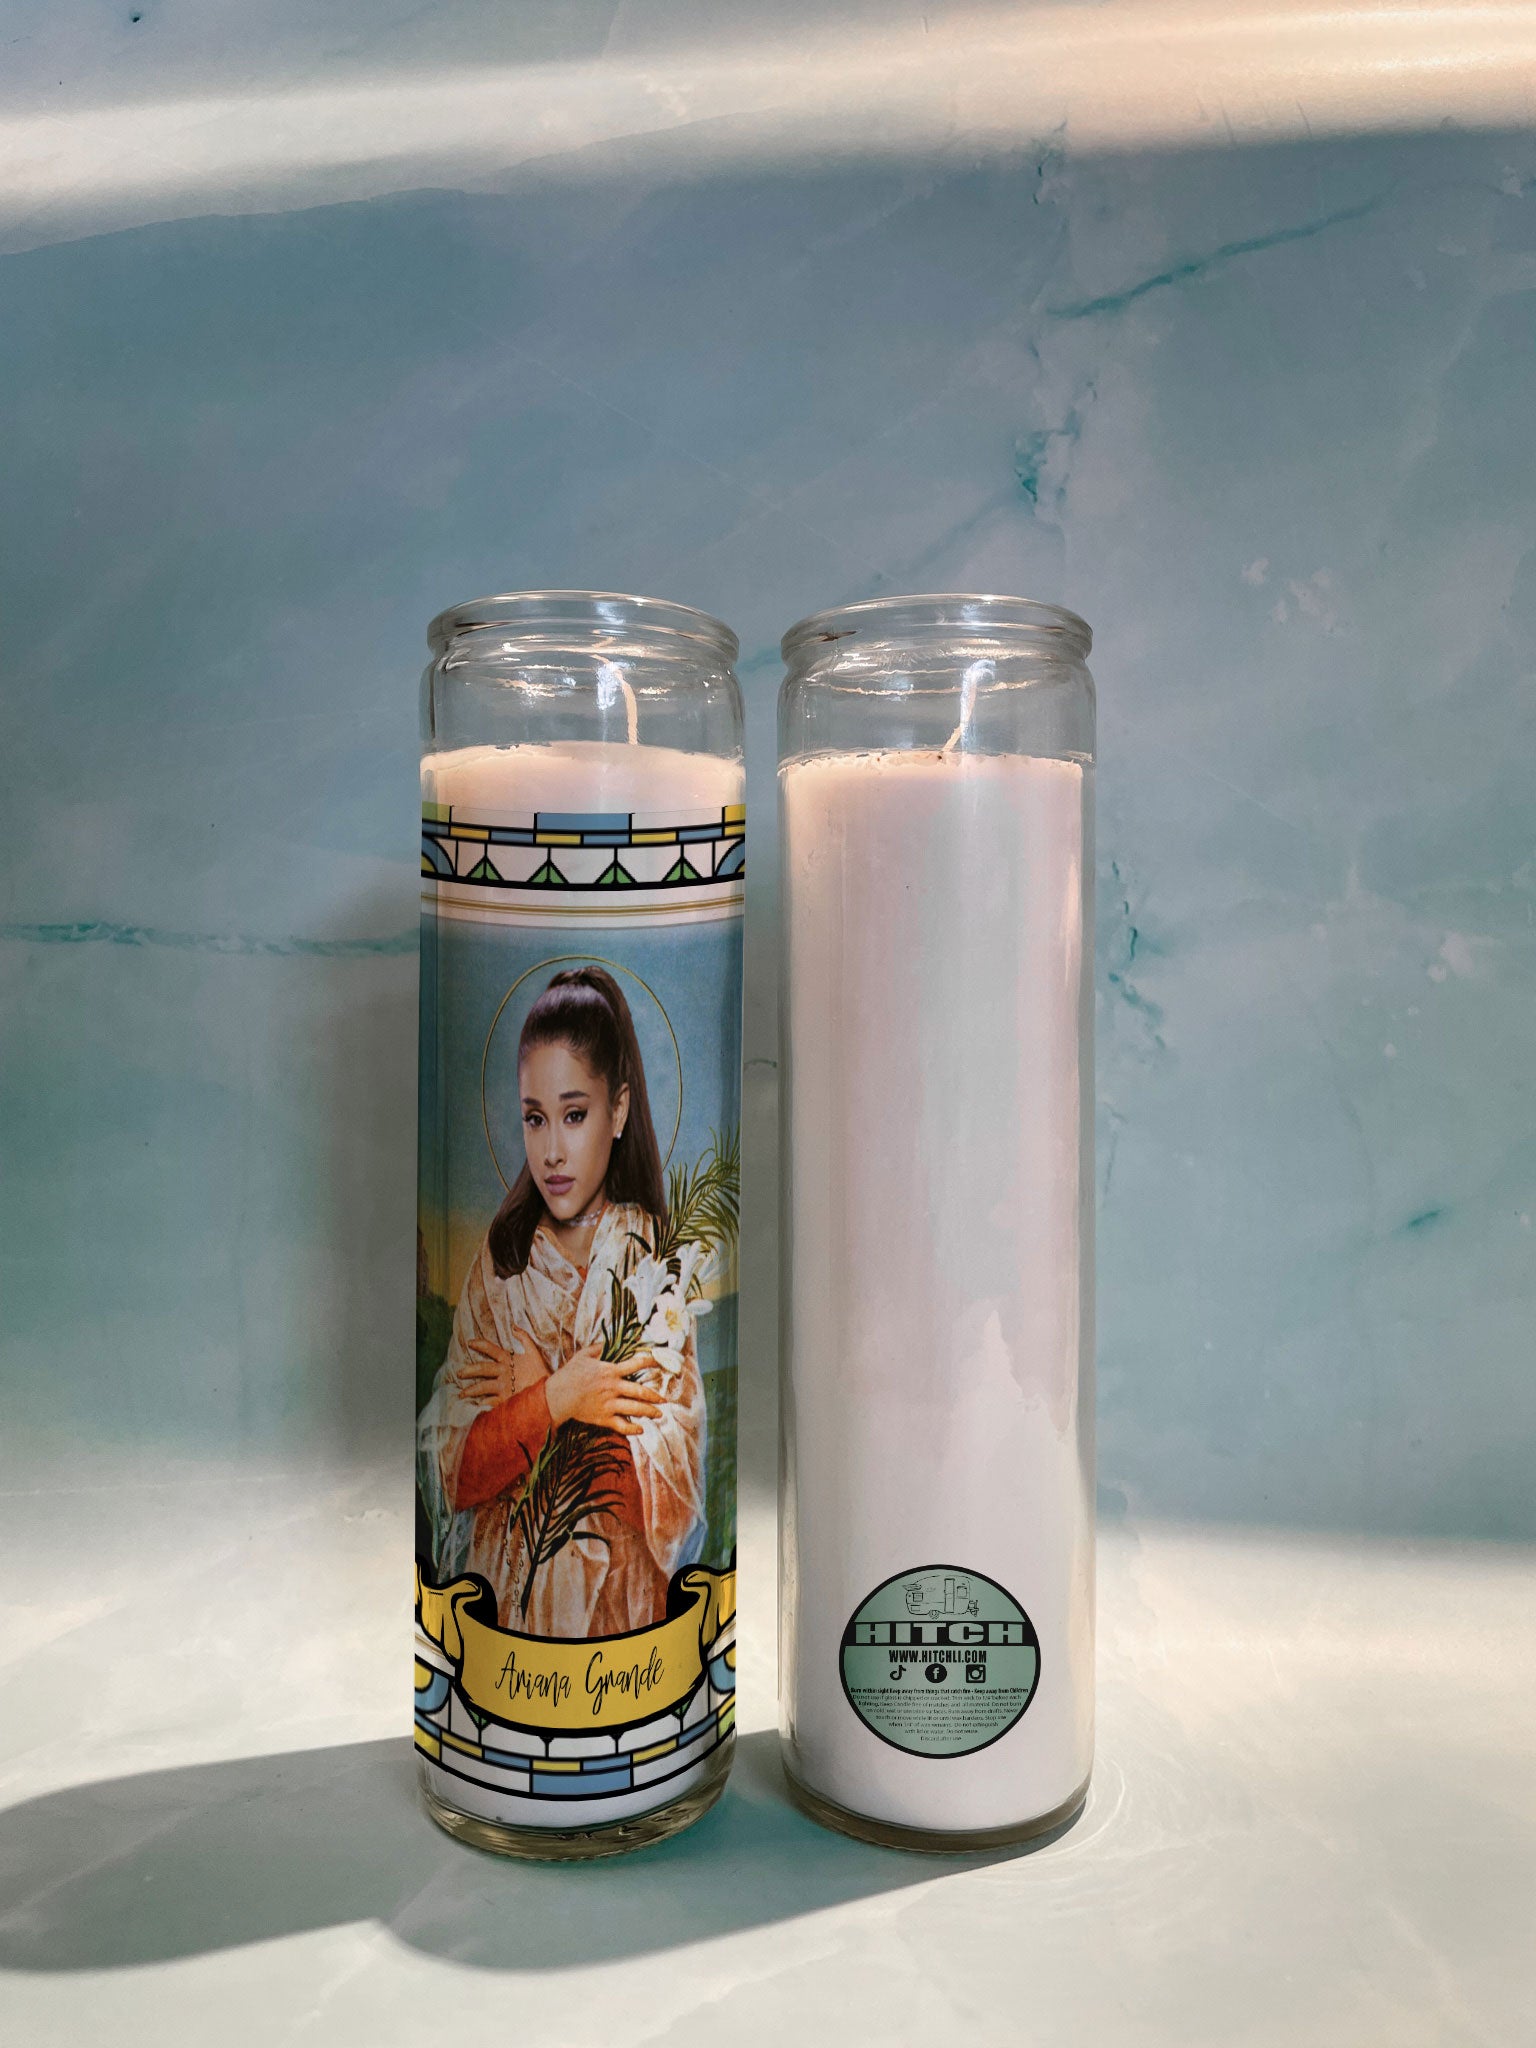 Ariana Grande Original Prayer Candle